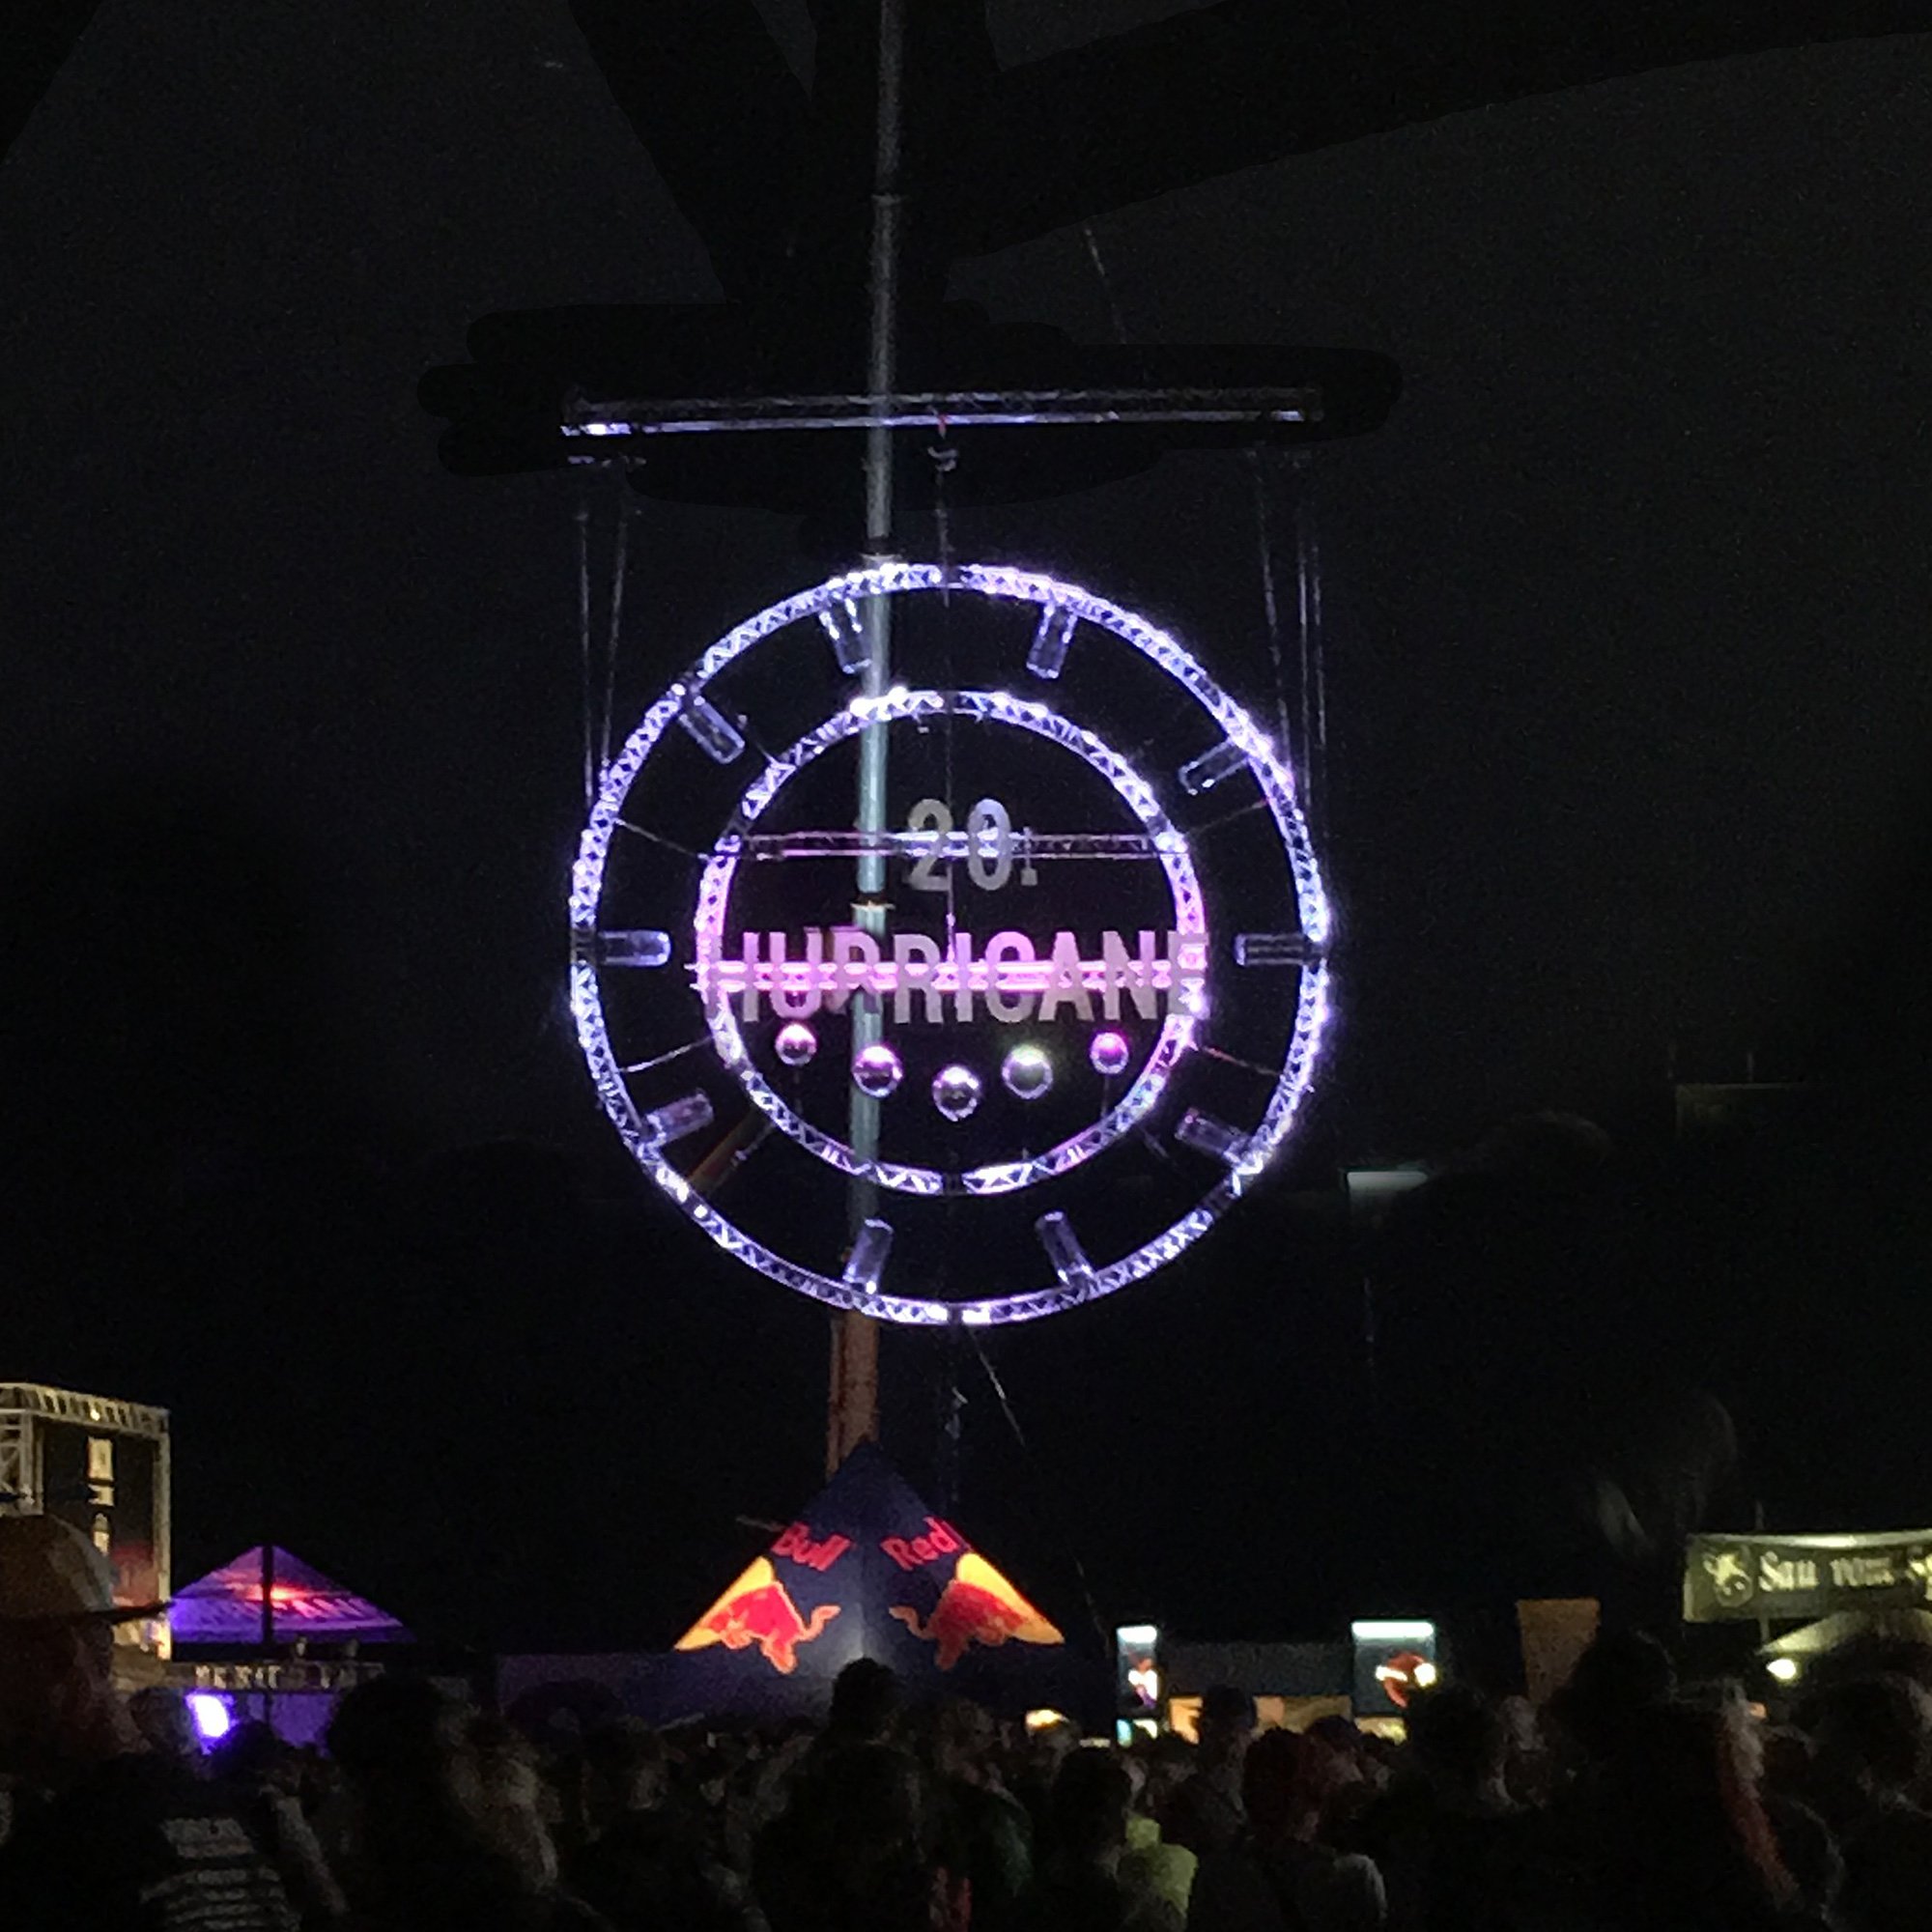 Hurricane Festival 2016: Discokugel